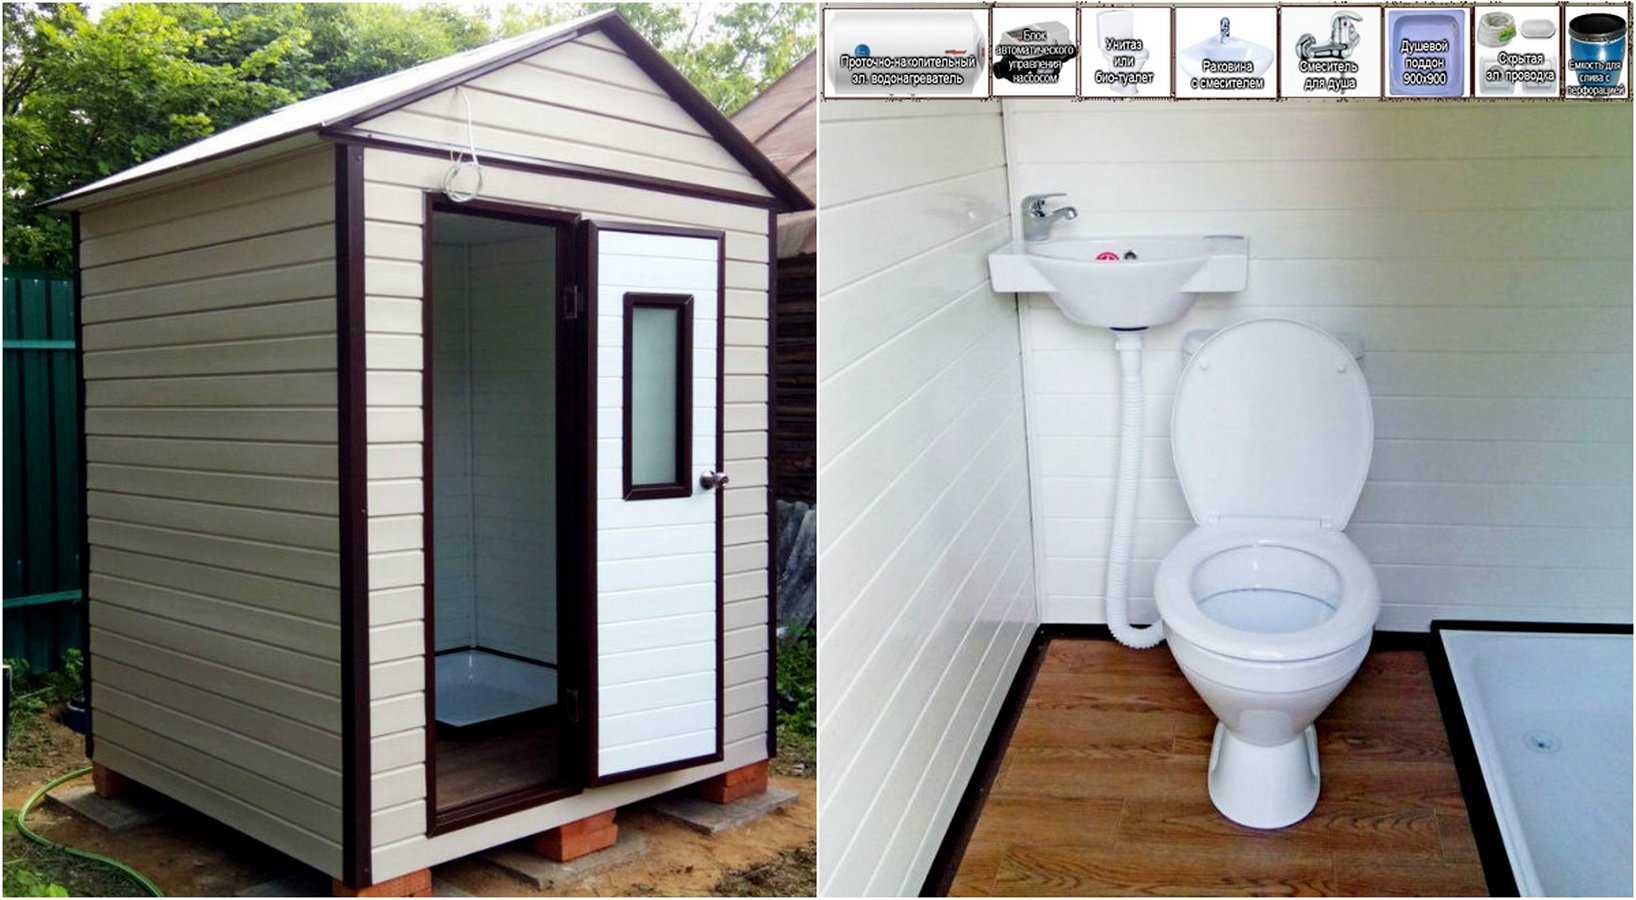 Классификация туалетных кабинок проводится по нескольким признакам. При выборе стоит обращать внимание на их особенности и достоинства.